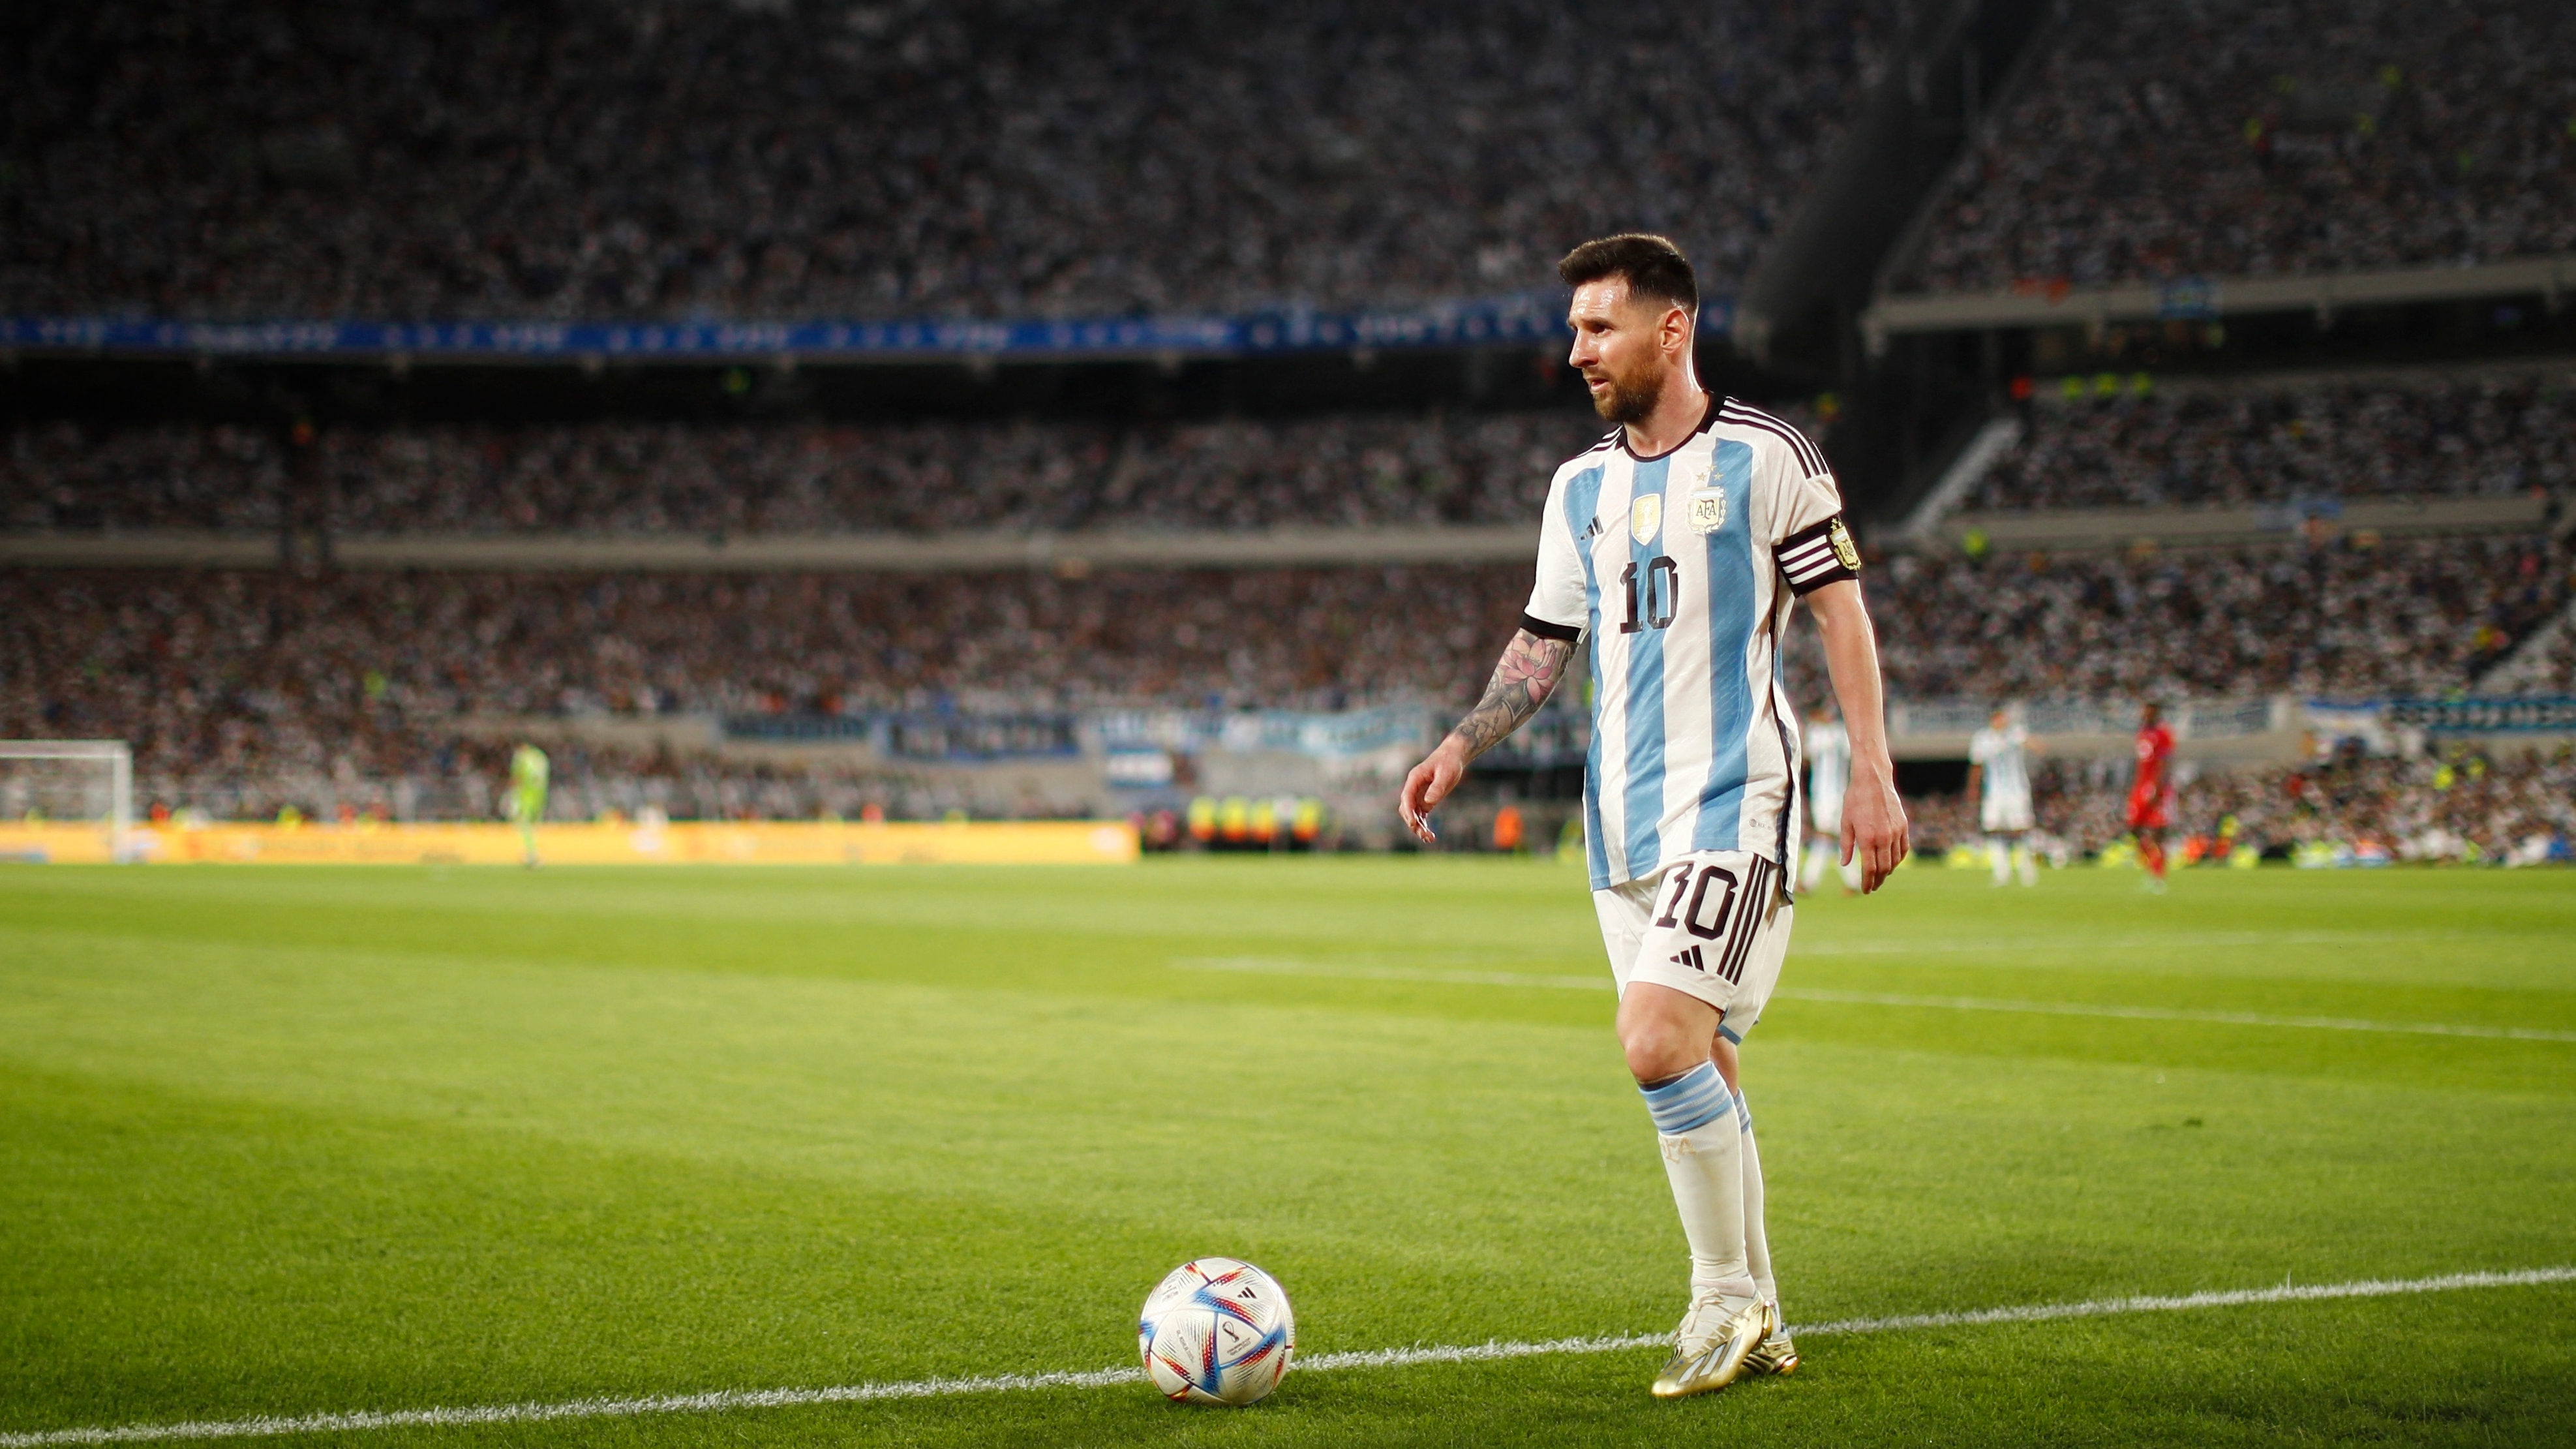 La estrategia nunca antes vista que planea la MLS para llevar a Lionel Messi a los Estados Unidos camino al Mundial 2026